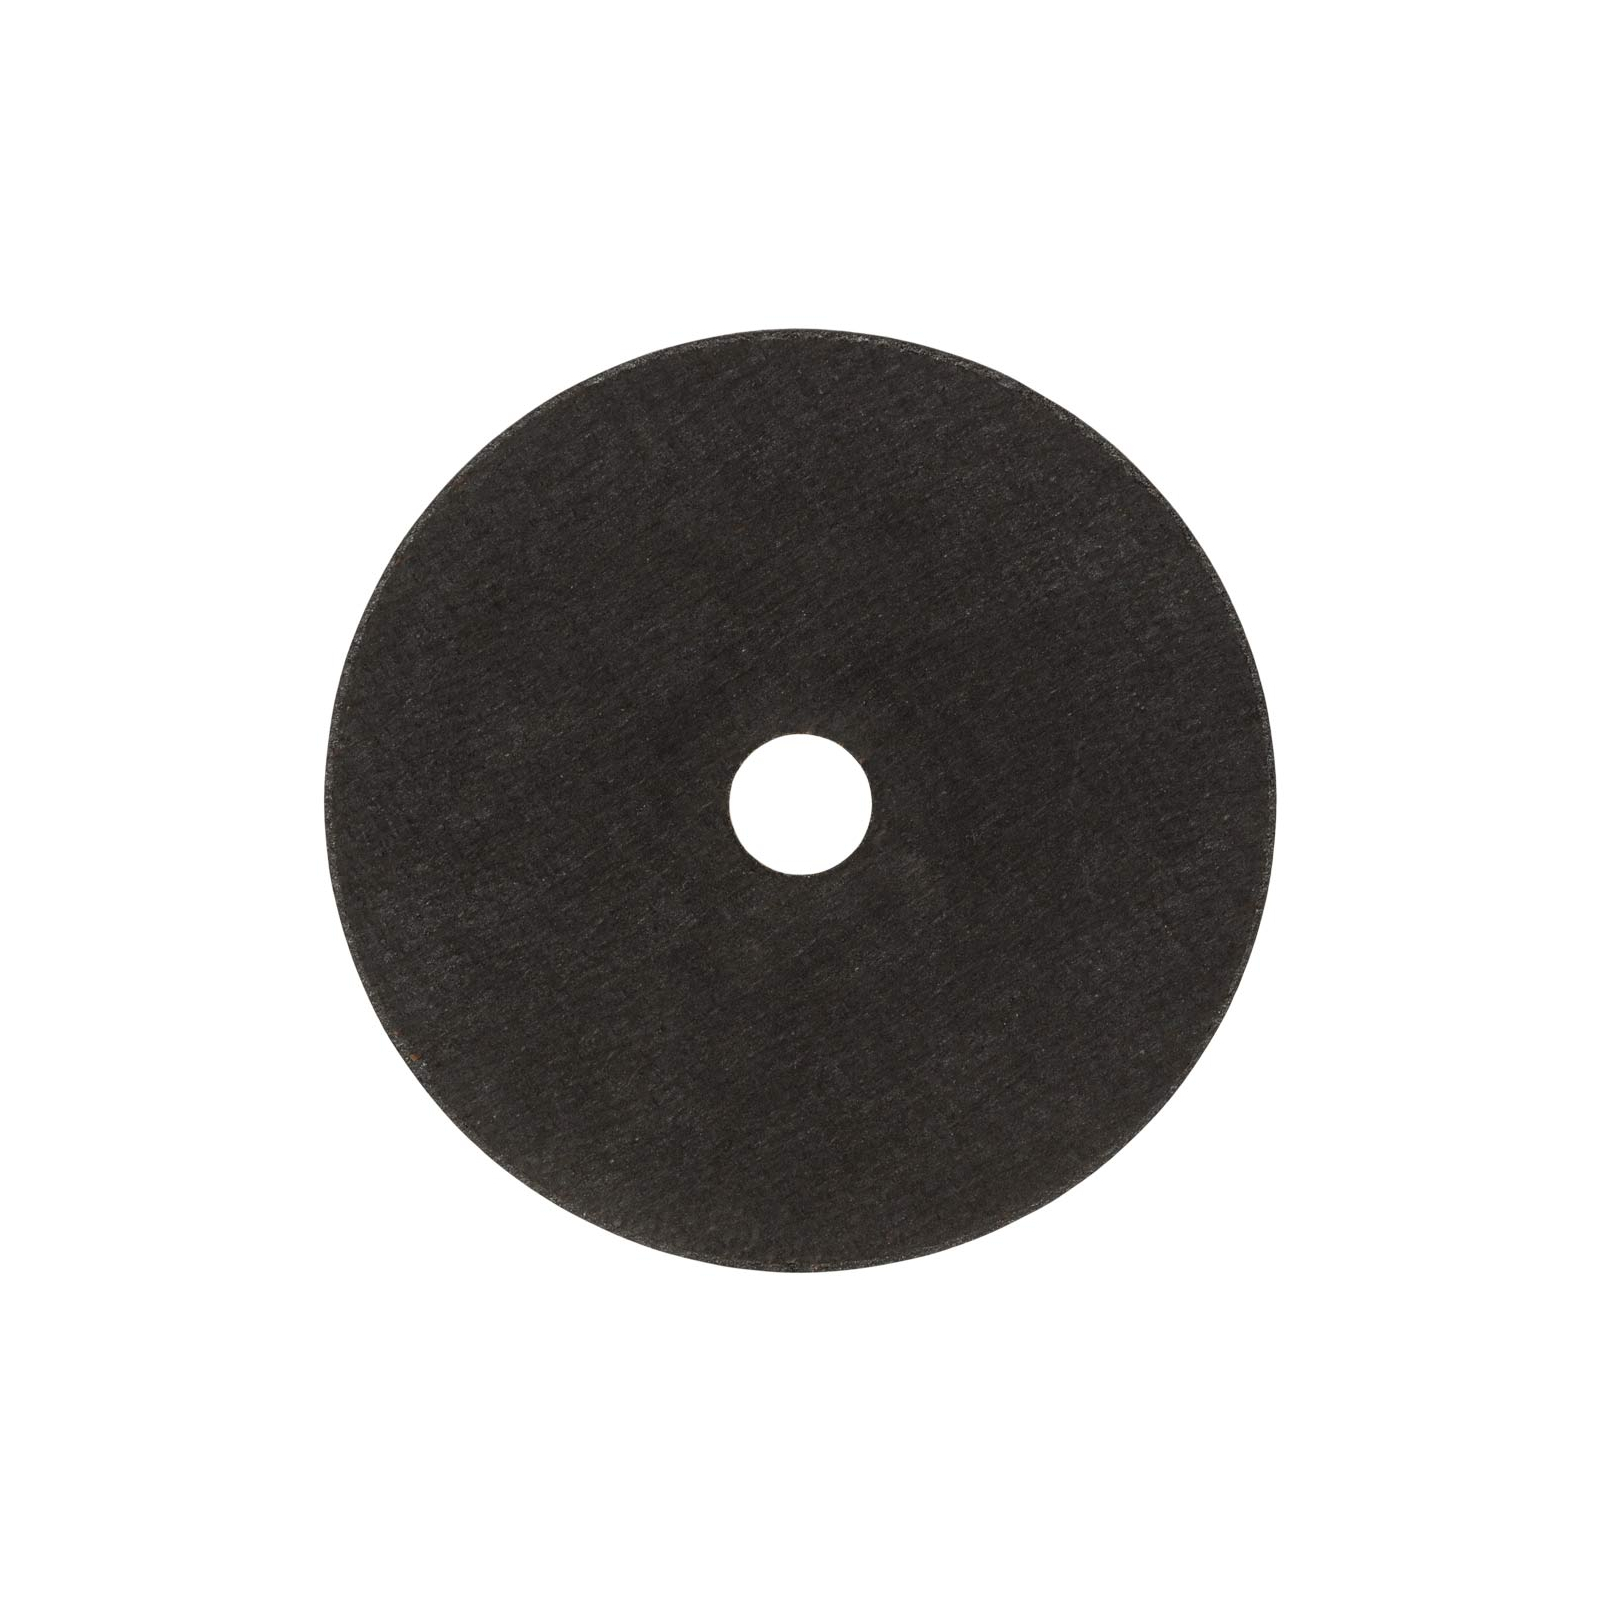 Круг отрезной Sigma по металлу и нержавеющей стали 125x1.6x22.2мм, 12250об/мин (1940091) изображение 2